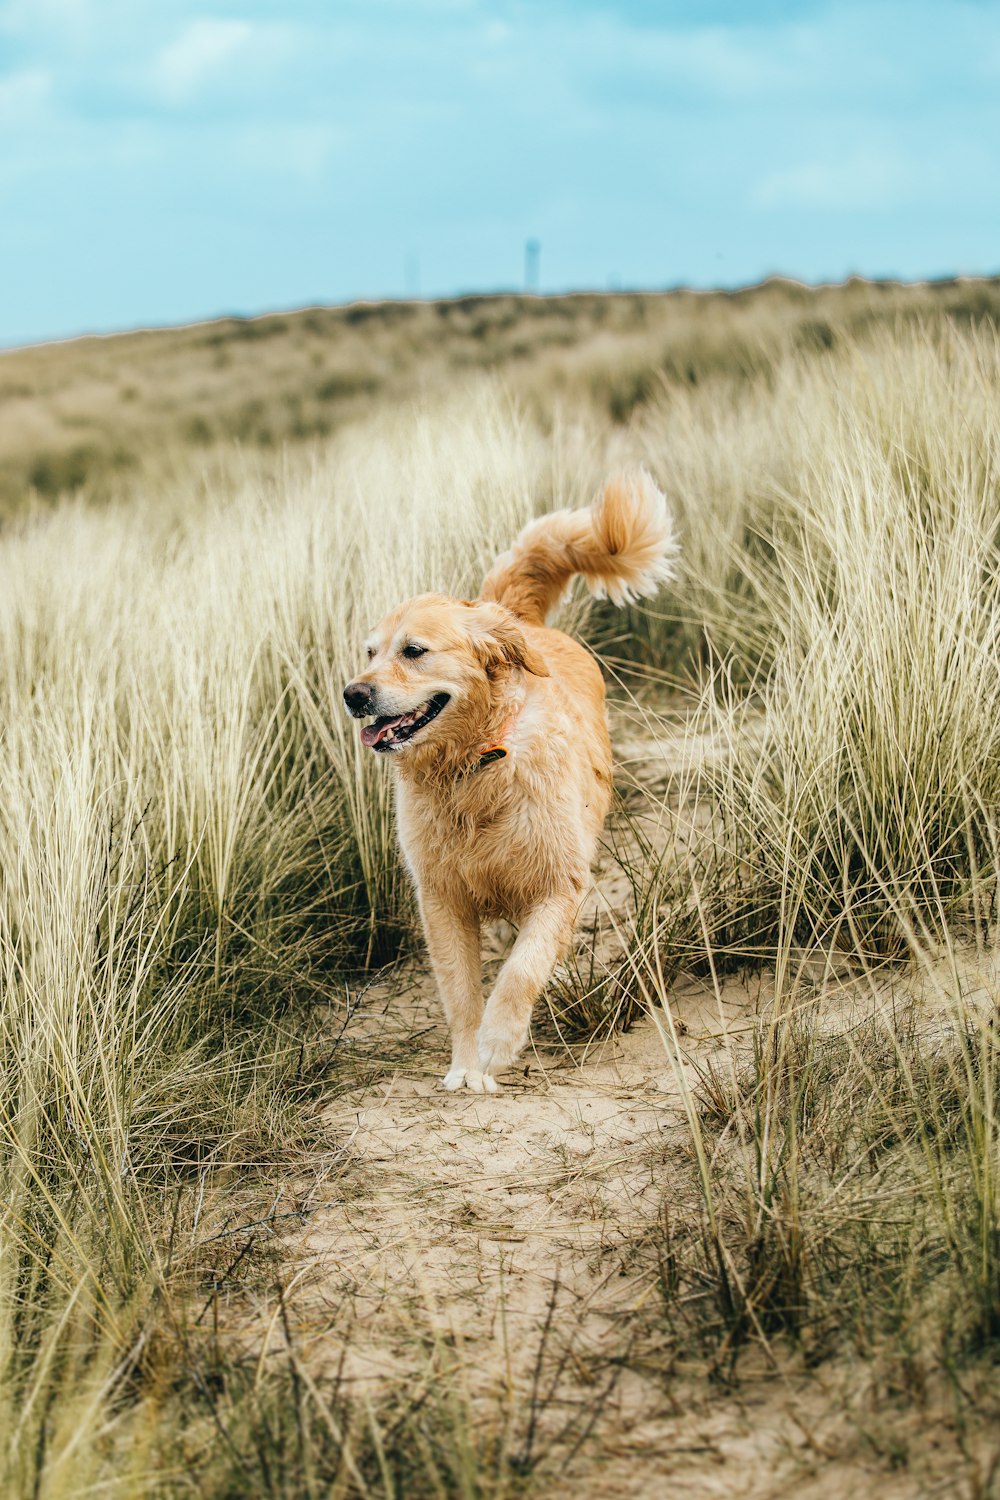 a dog running through a field of tall grass